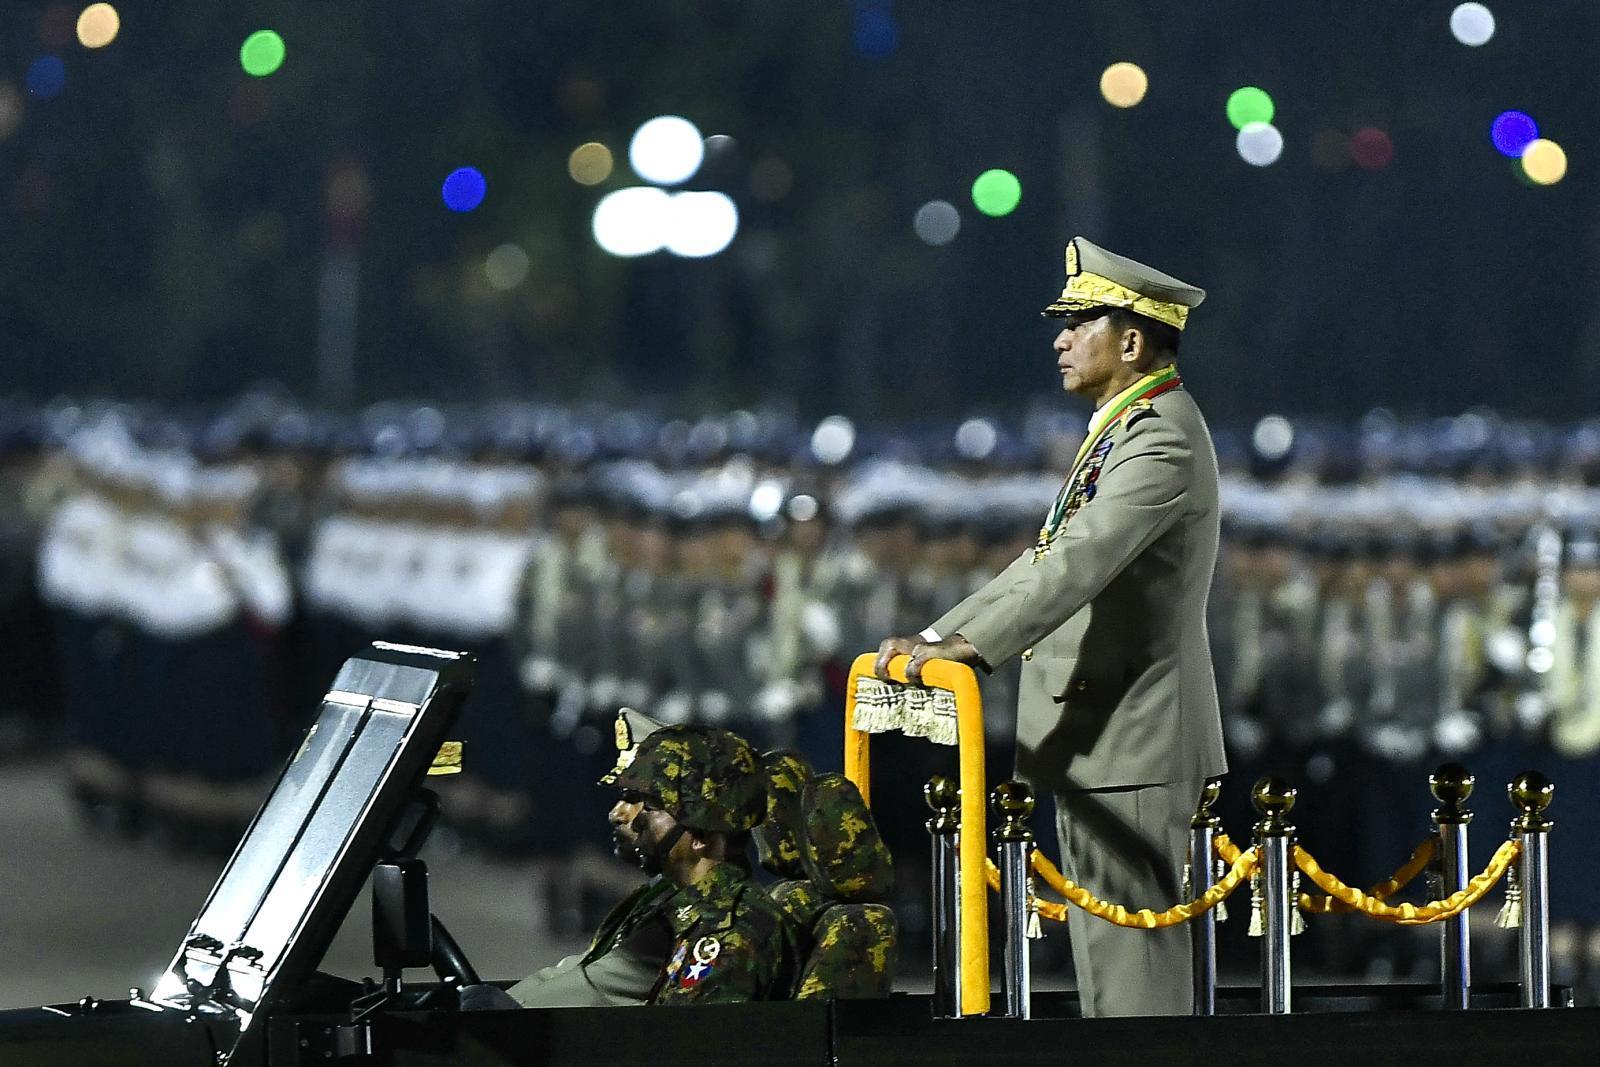 กองทัพพม่า แสดงแสนยานุภาพครั้งใหญ่ ครบรอบสถาปนากองทัพ 79 ปี